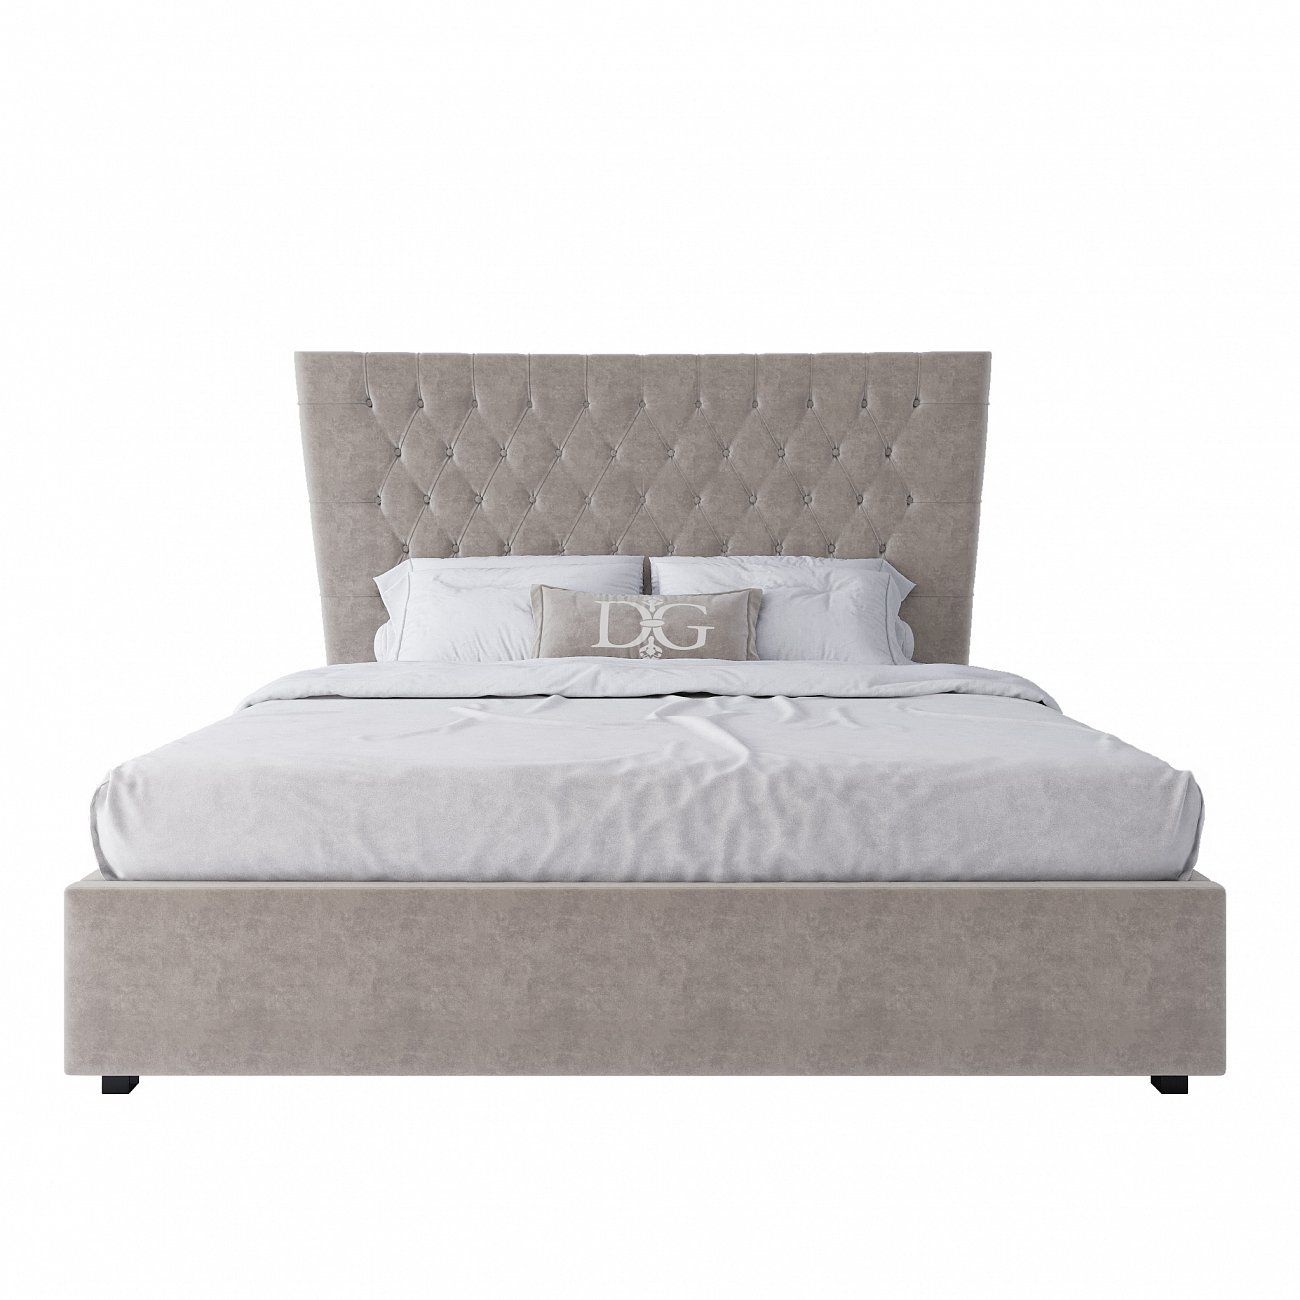 Кровать двуспальная с мягким изголовьем 180х200 см светло-бежевая QuickSand